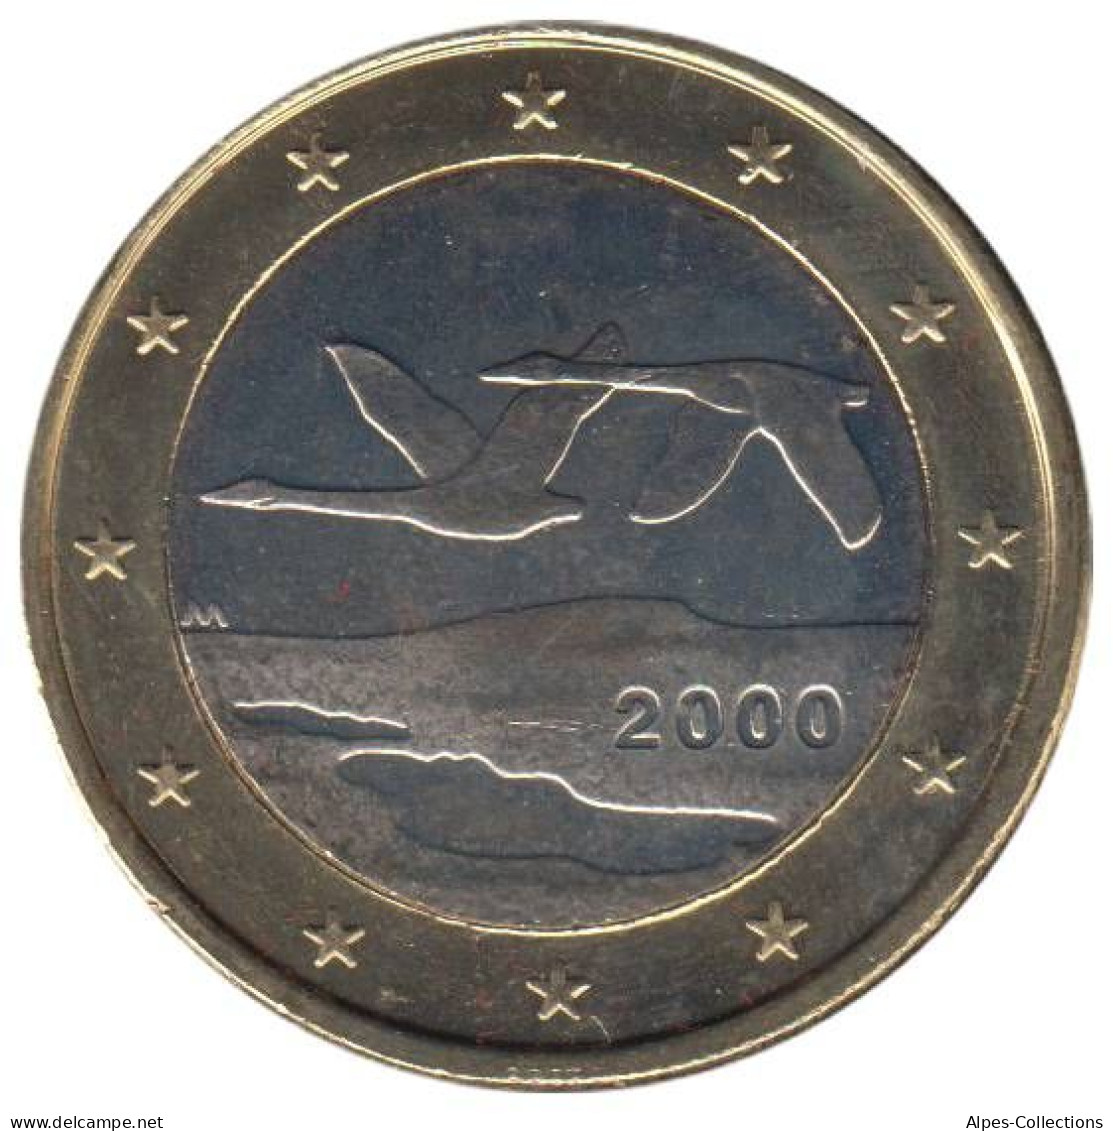 FI10000.1 - FINLANDE - 1 Euro - 2000 - Finlandia